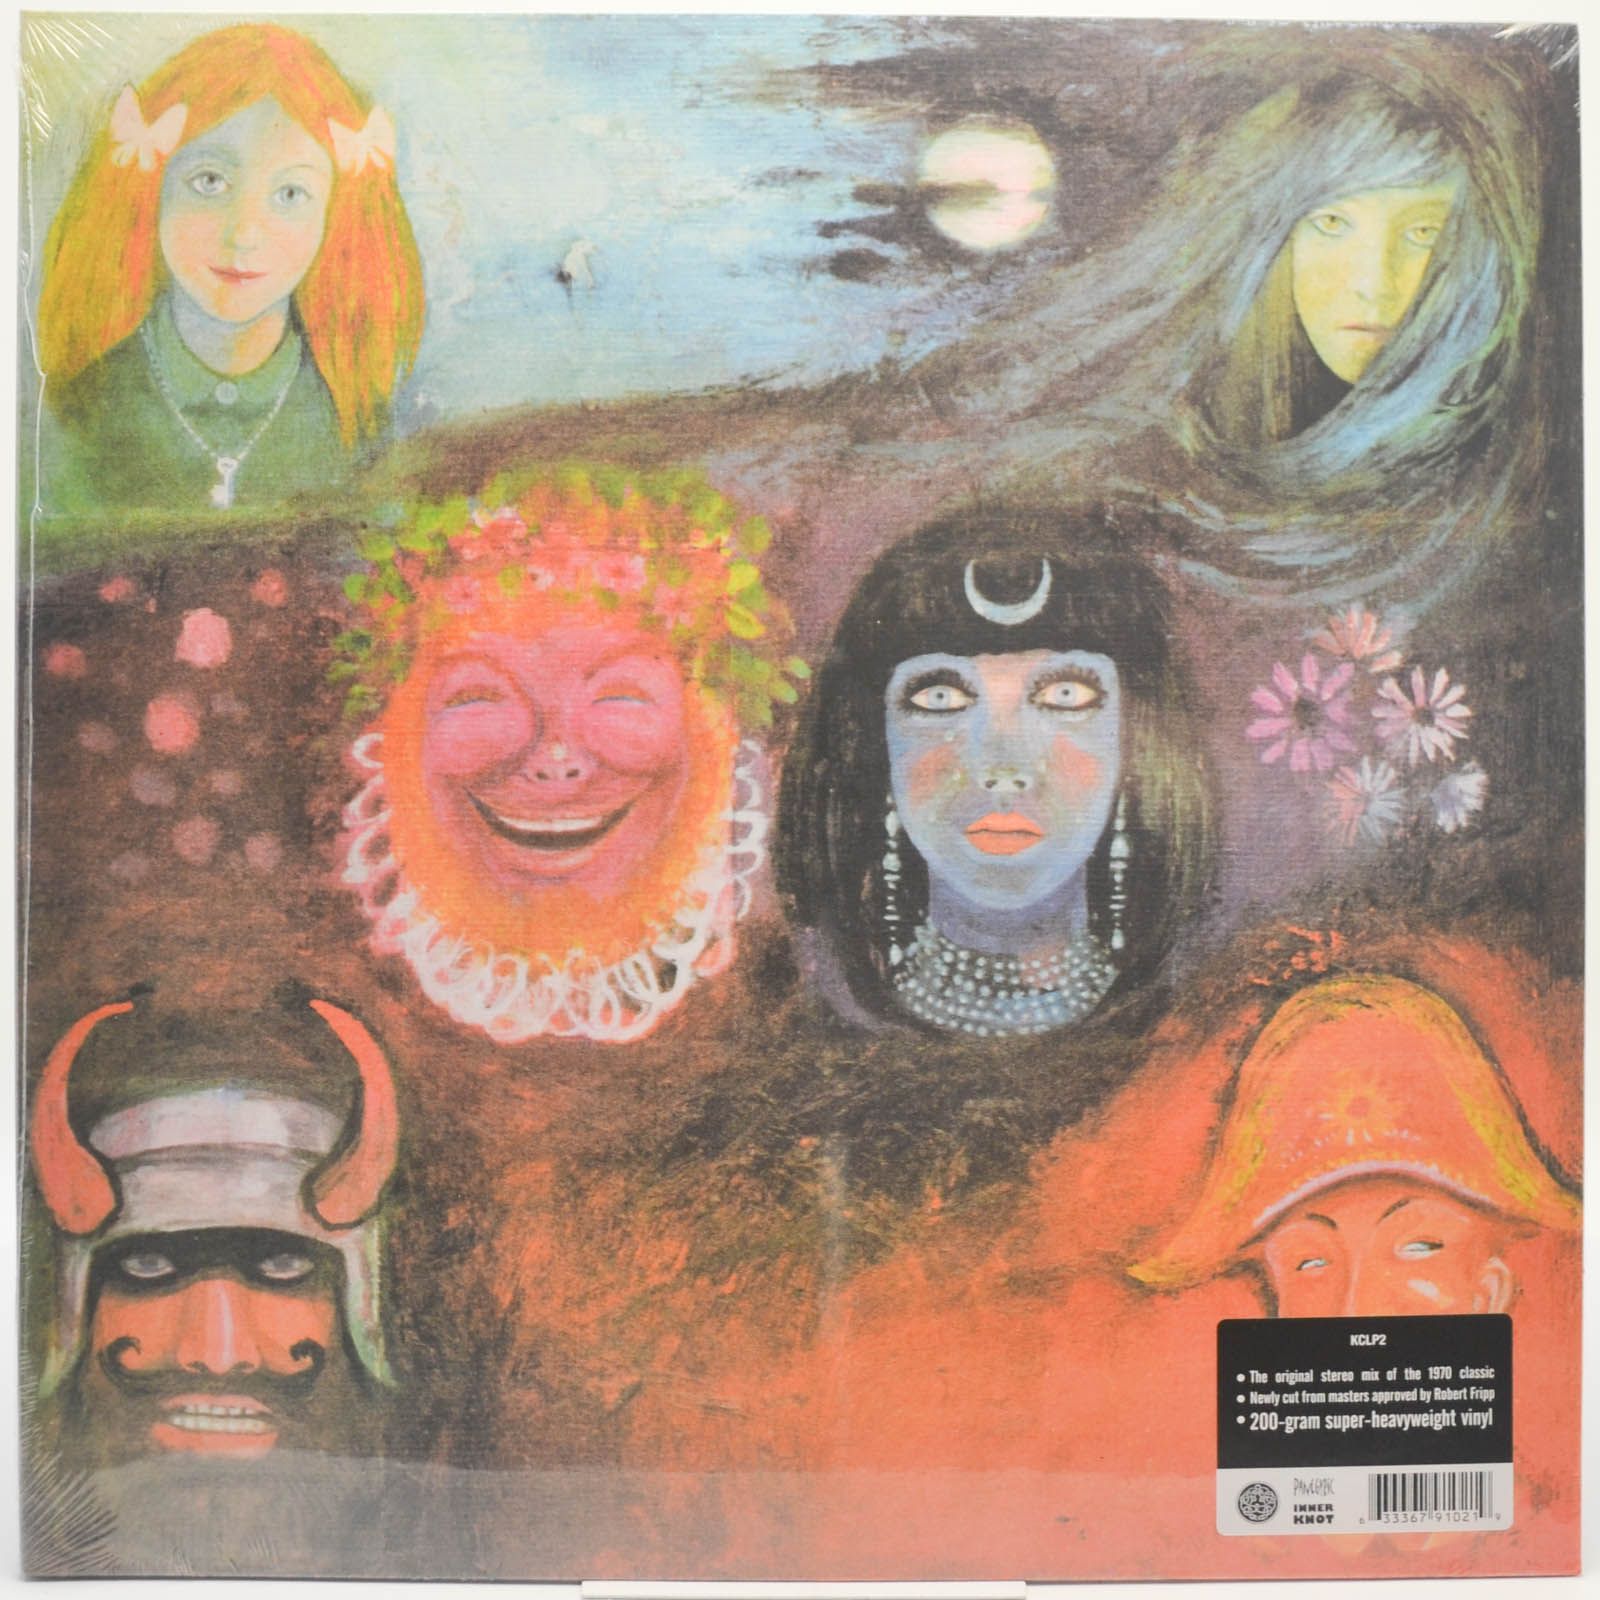 King Crimson — In The Wake Of Poseidon, 1970